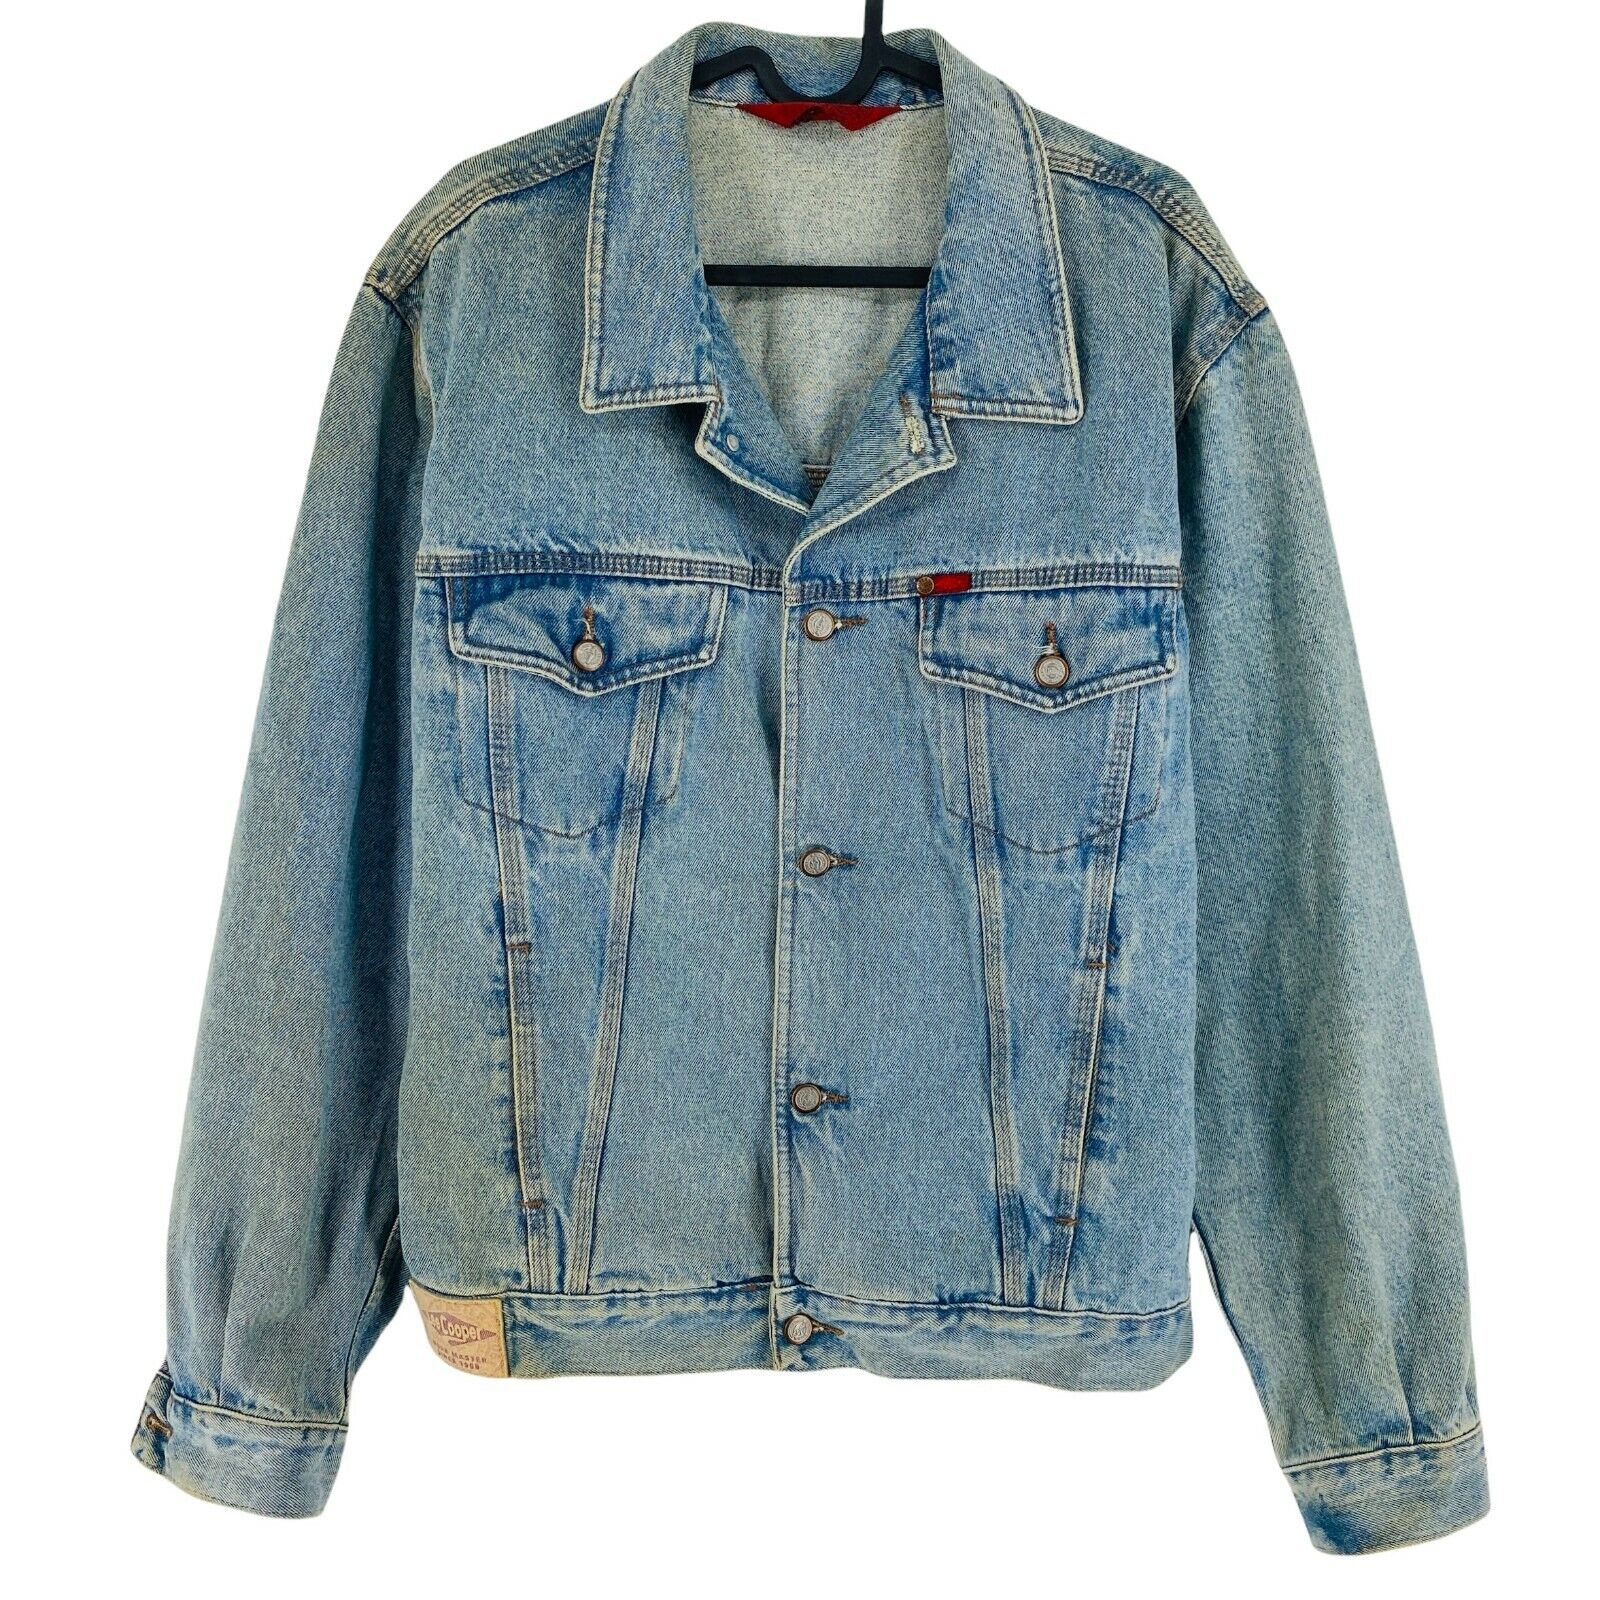 LEE COOPER Blue Vintage Retro Denim Jeans Size S | eBay